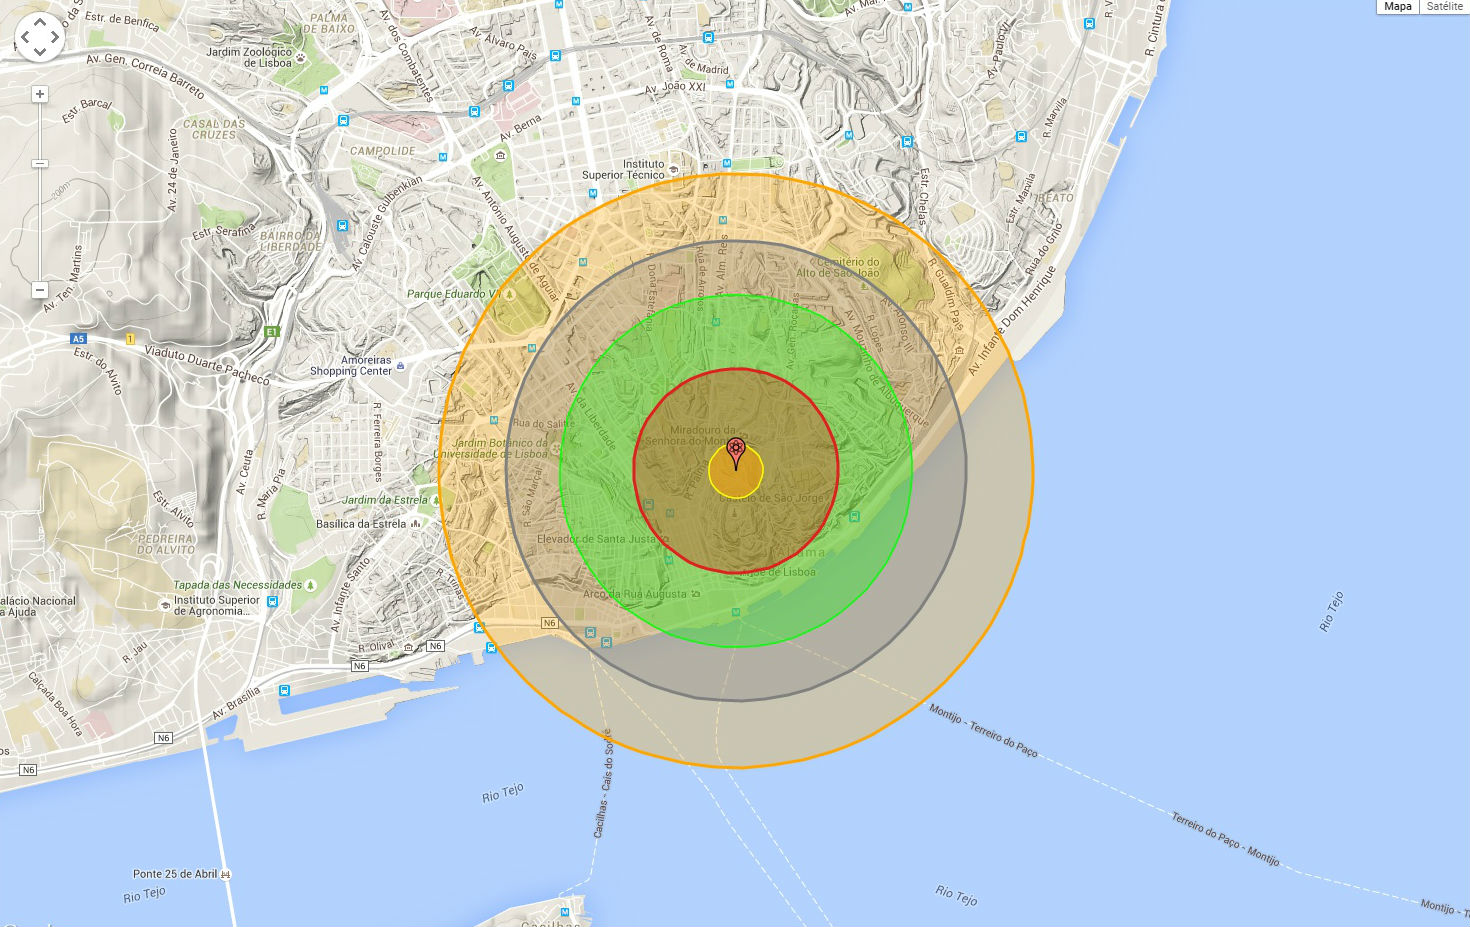 E se a bomba de Hiroxima caísse na sua cidade?